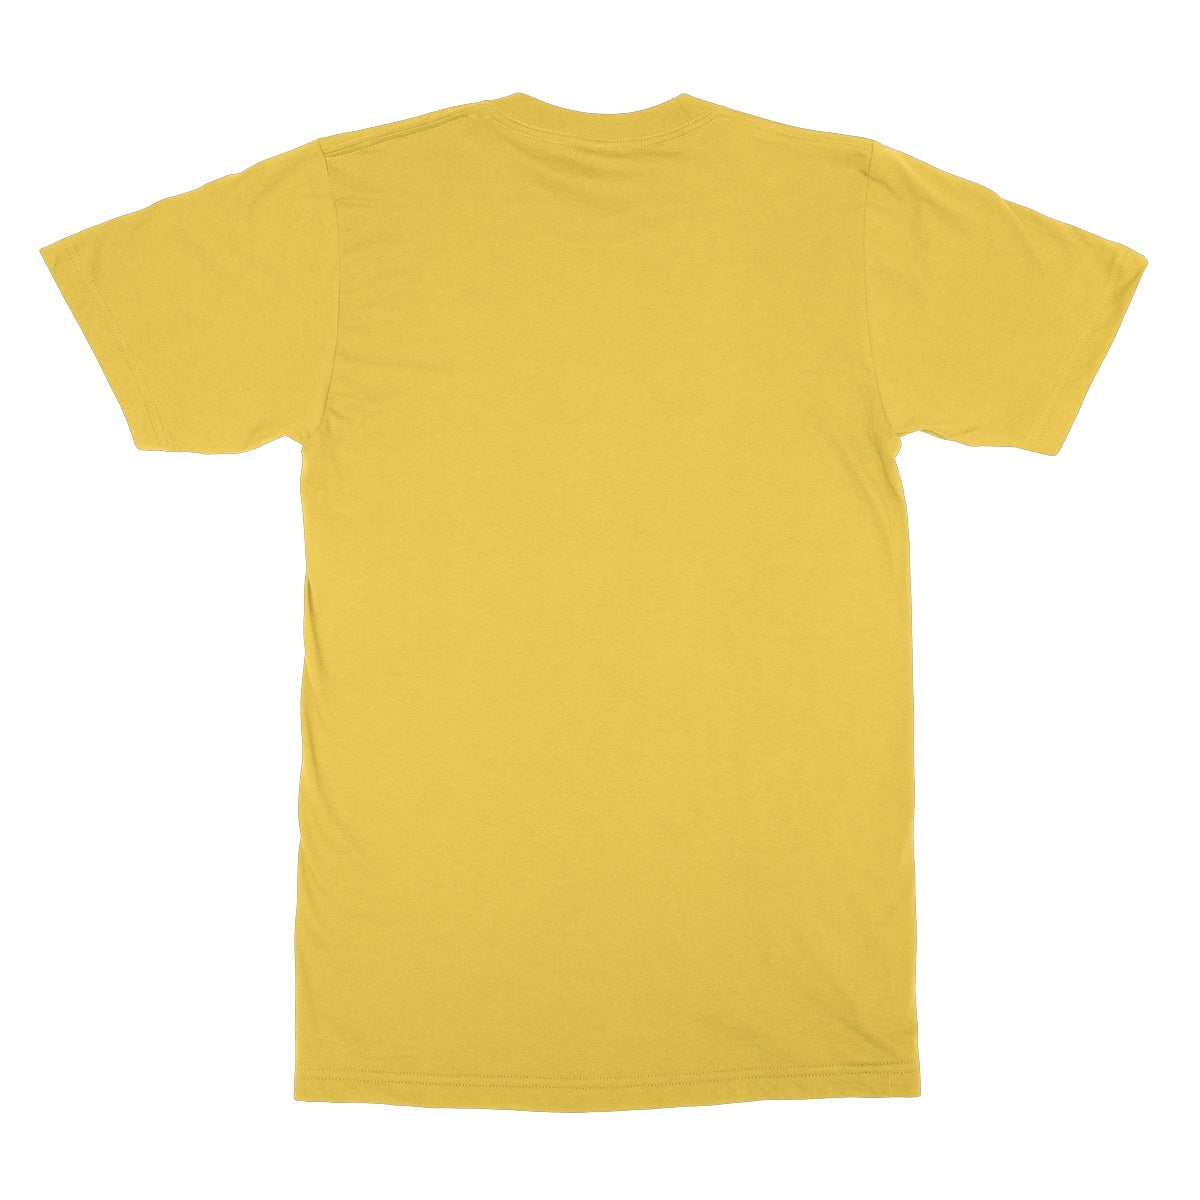 Yellow Shirt